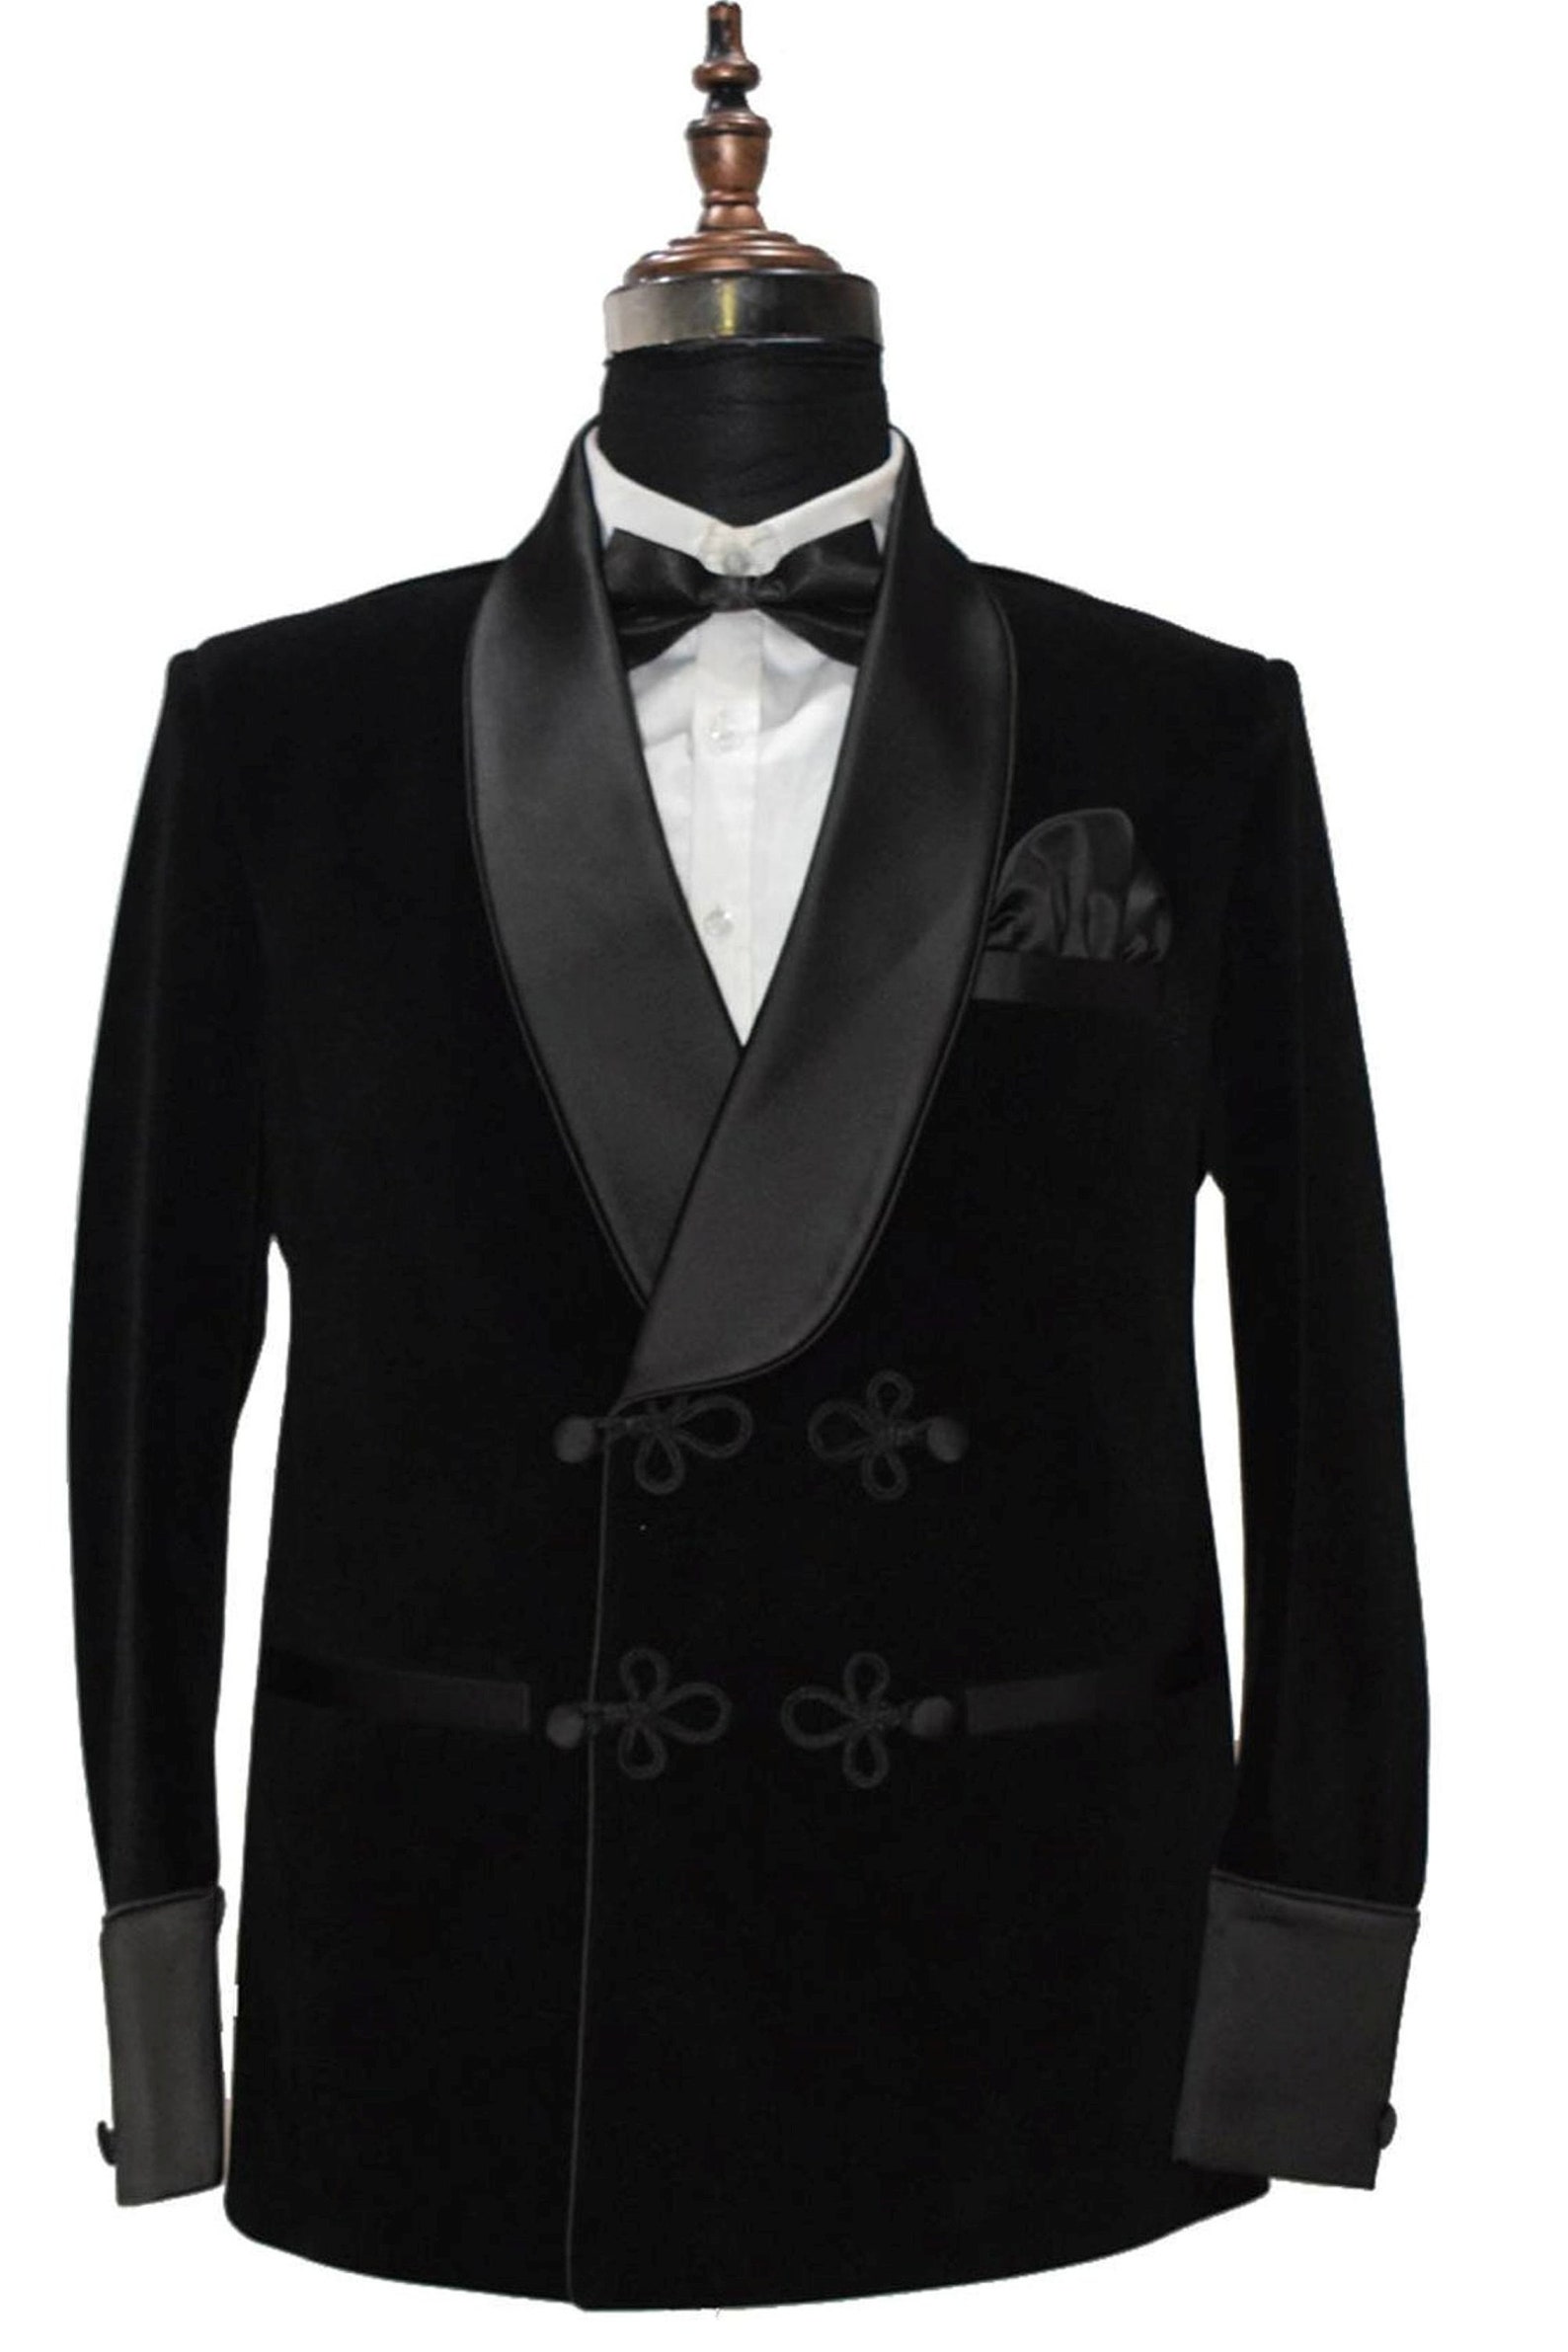 Men's Smoking Jacket Black Velvet Elegant Hosting Party | Etsy